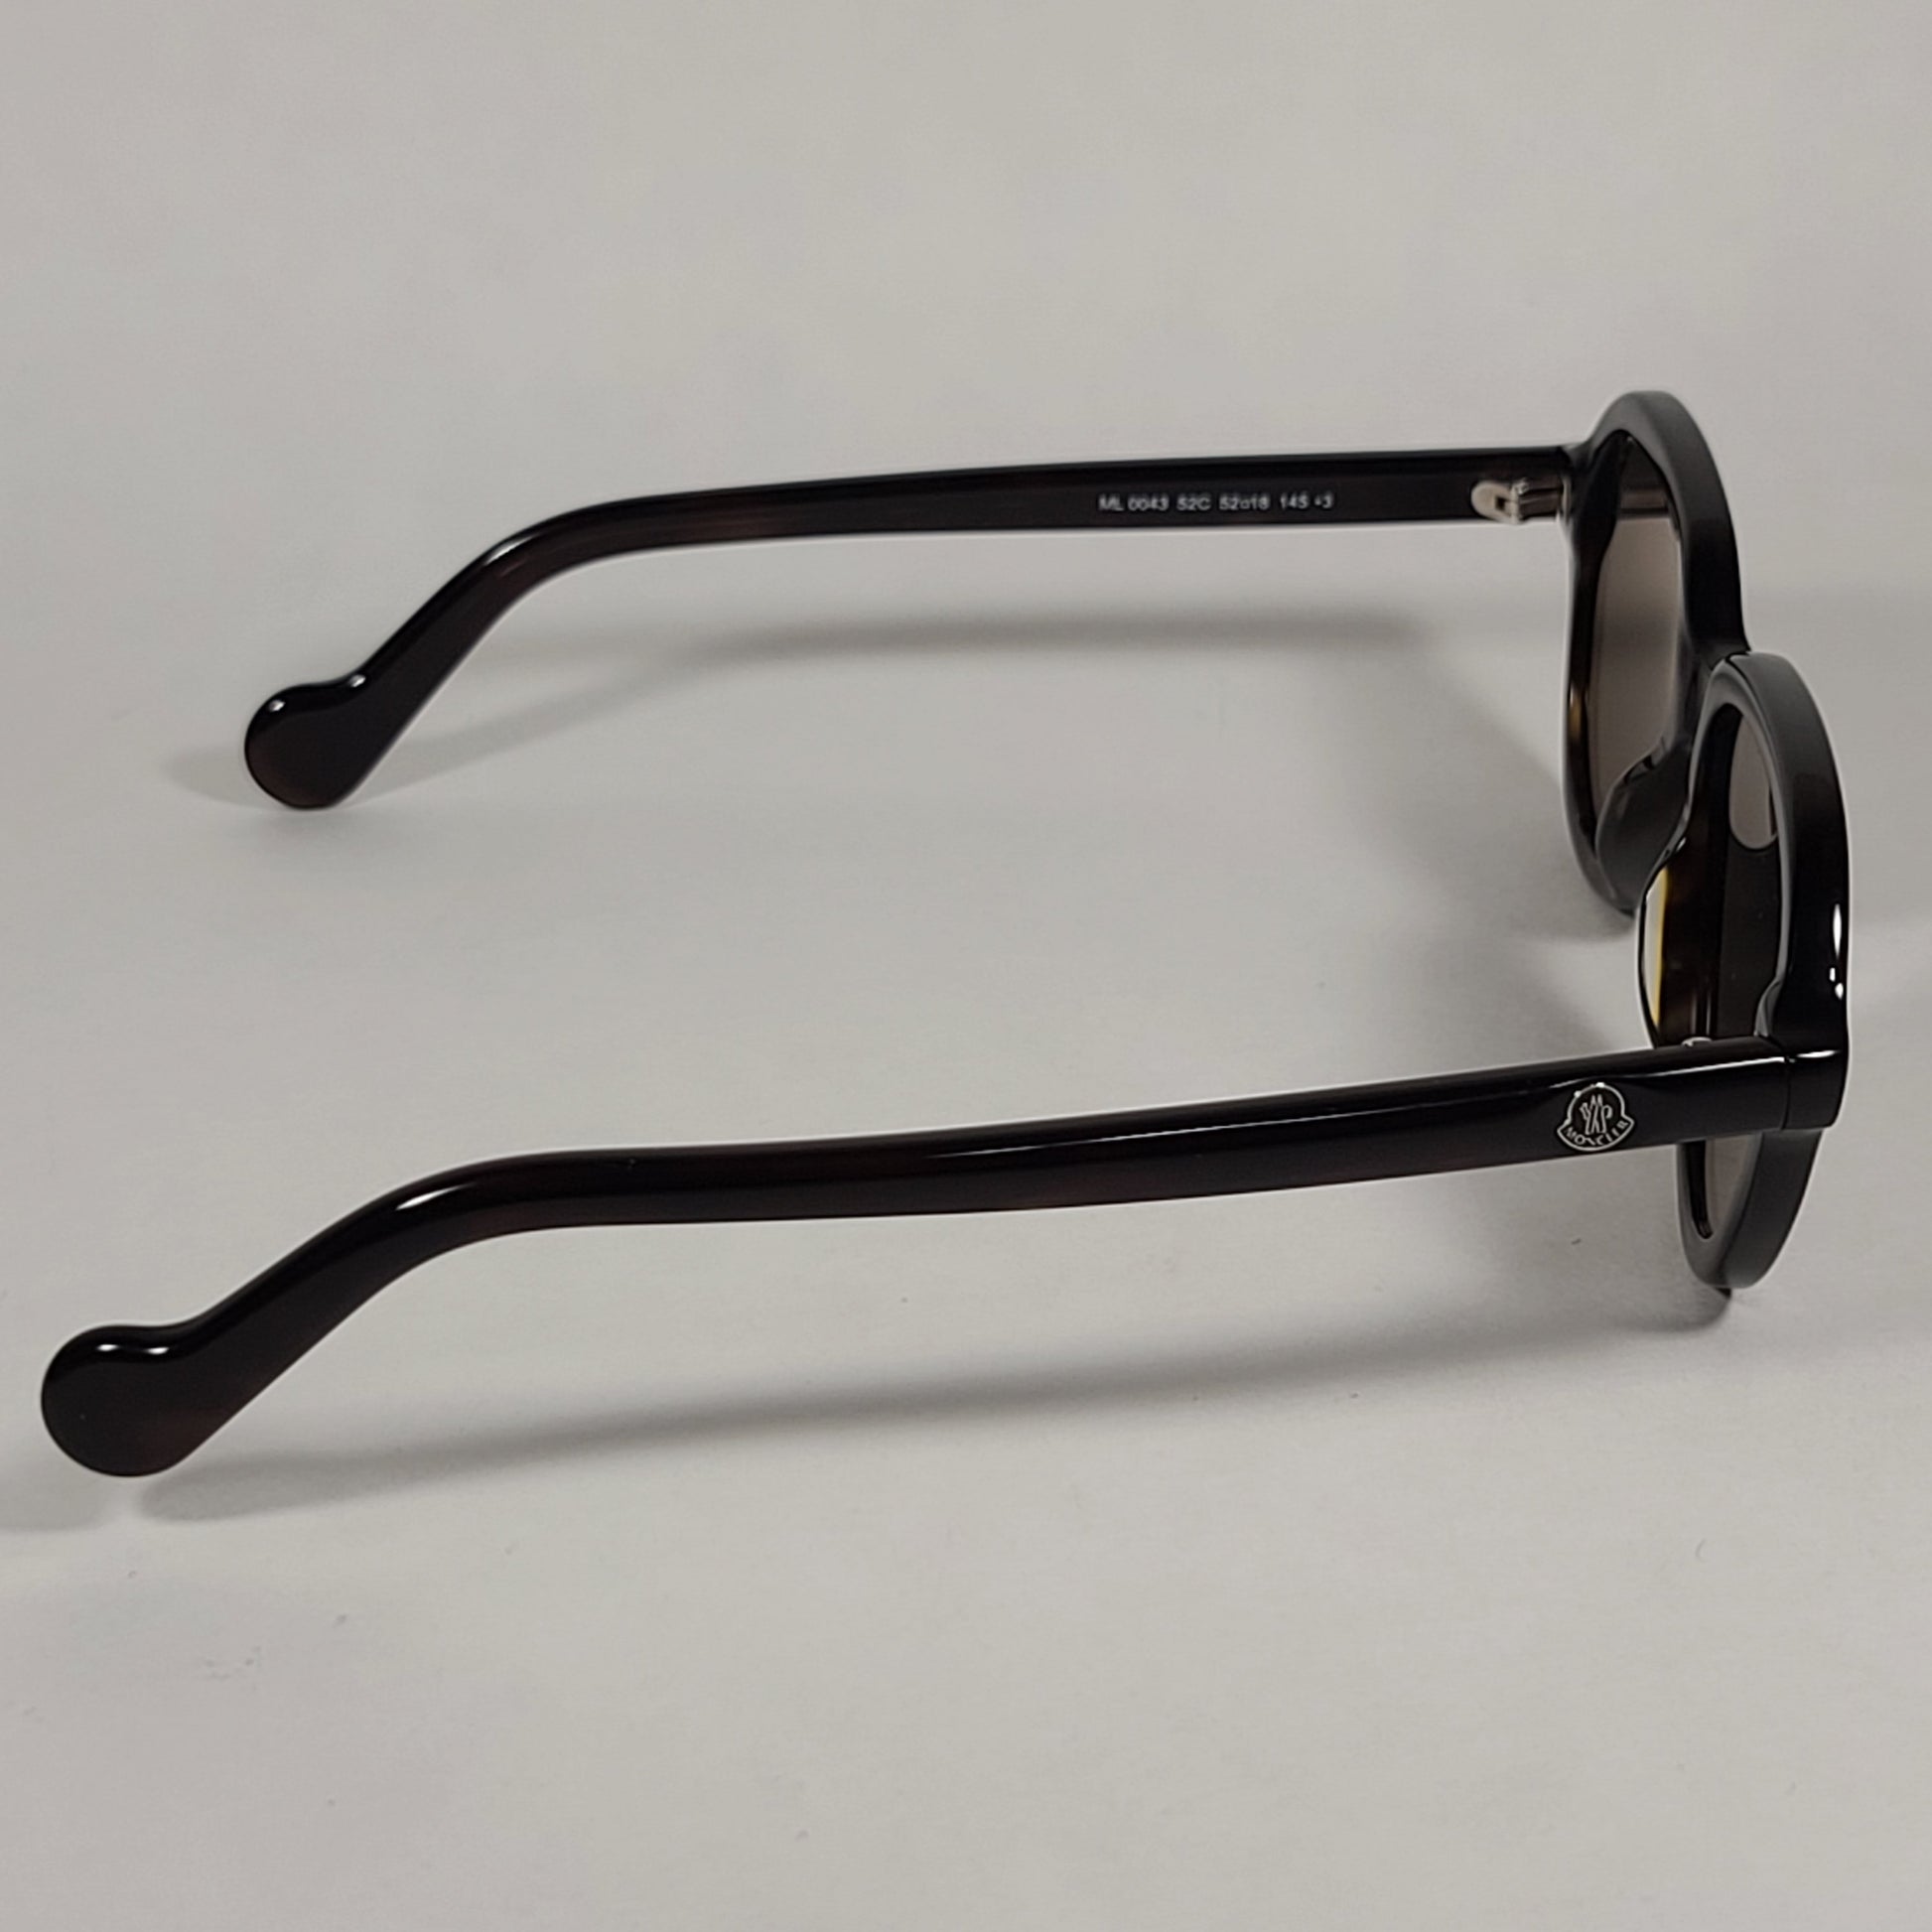 Moncler Aviator Sunglasses Dark Havana Brown Frame Gold Tint Lens ML0043 52C - Sunglasses